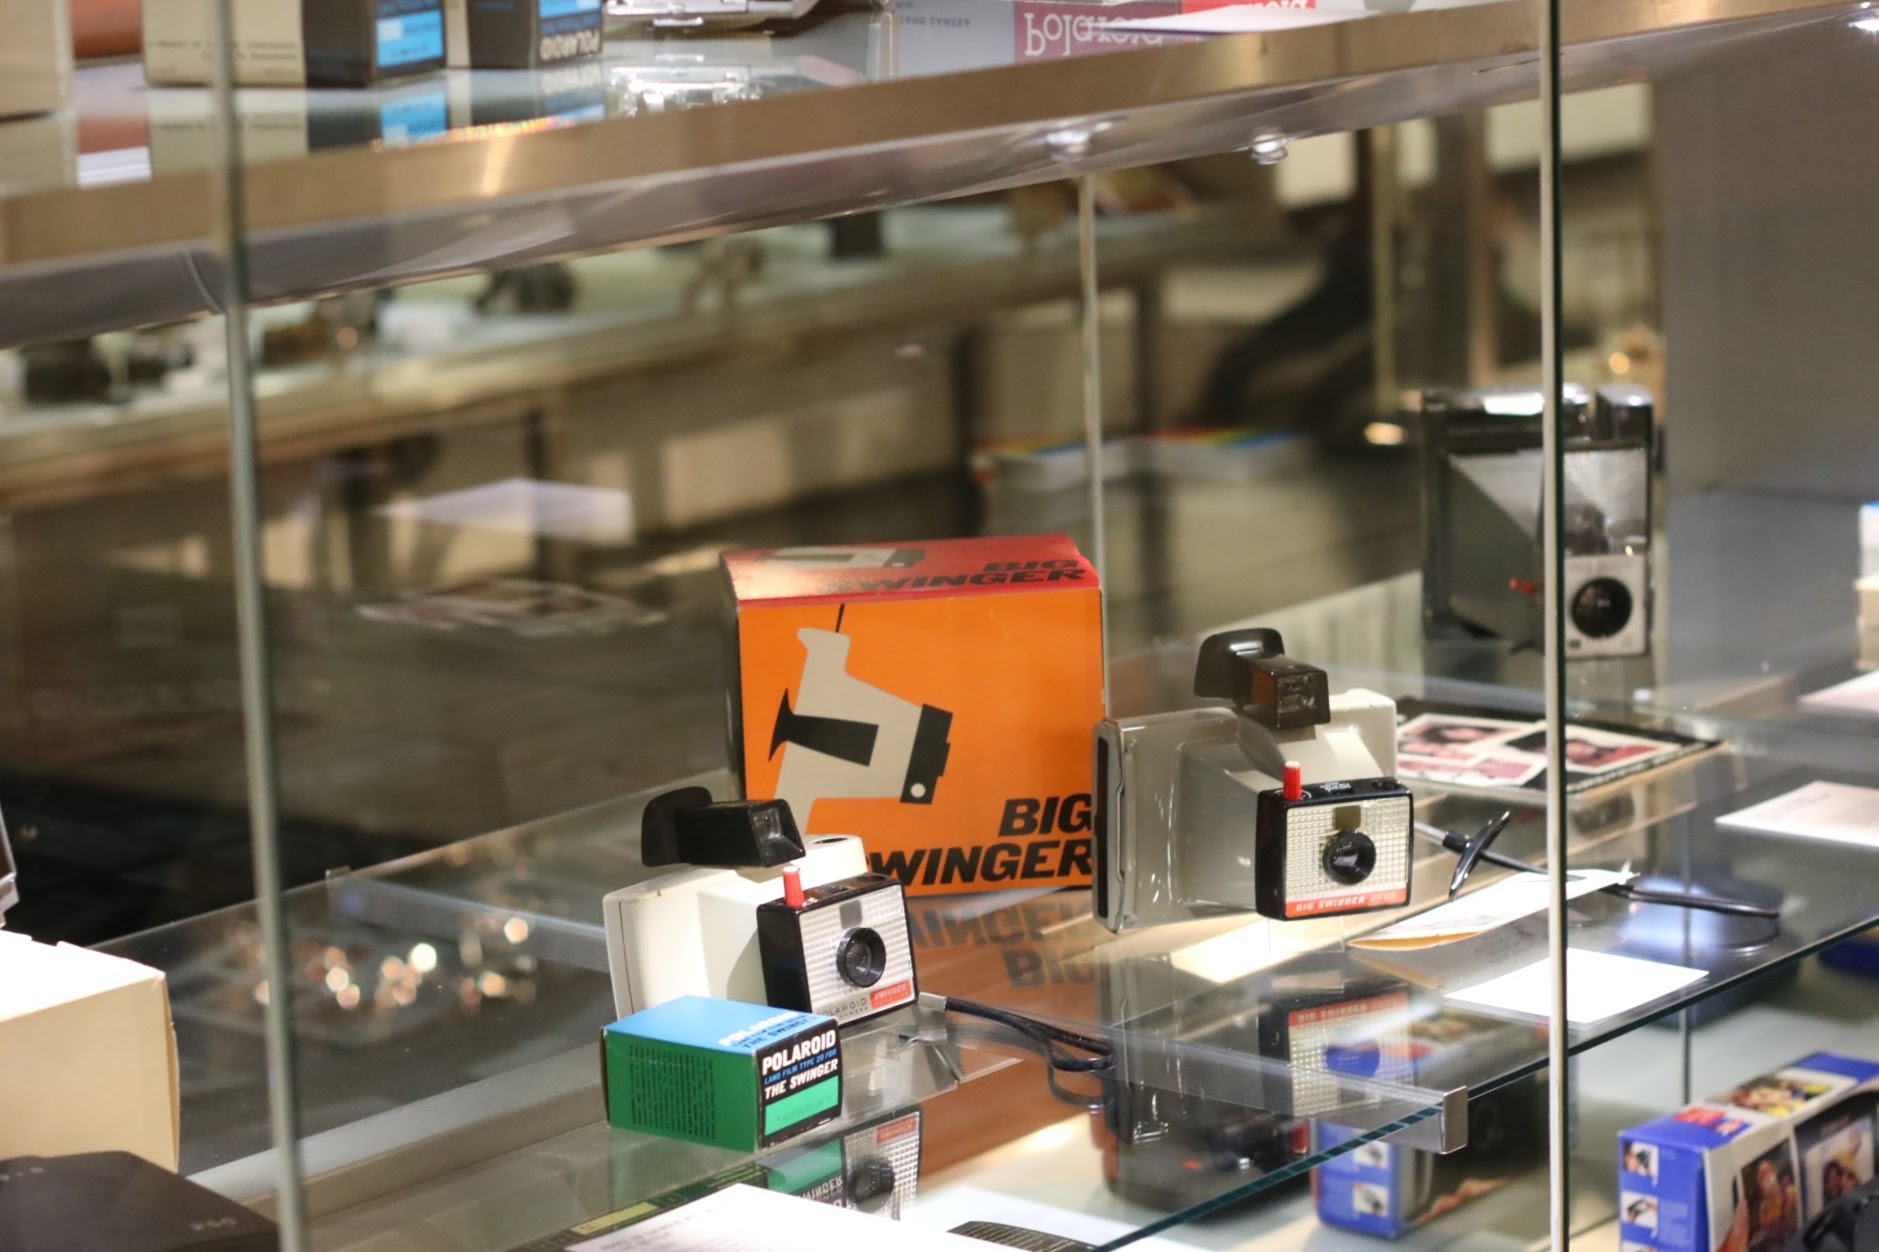 Ausstellungsbericht: The Polaroid Project in der Galerie Westlicht